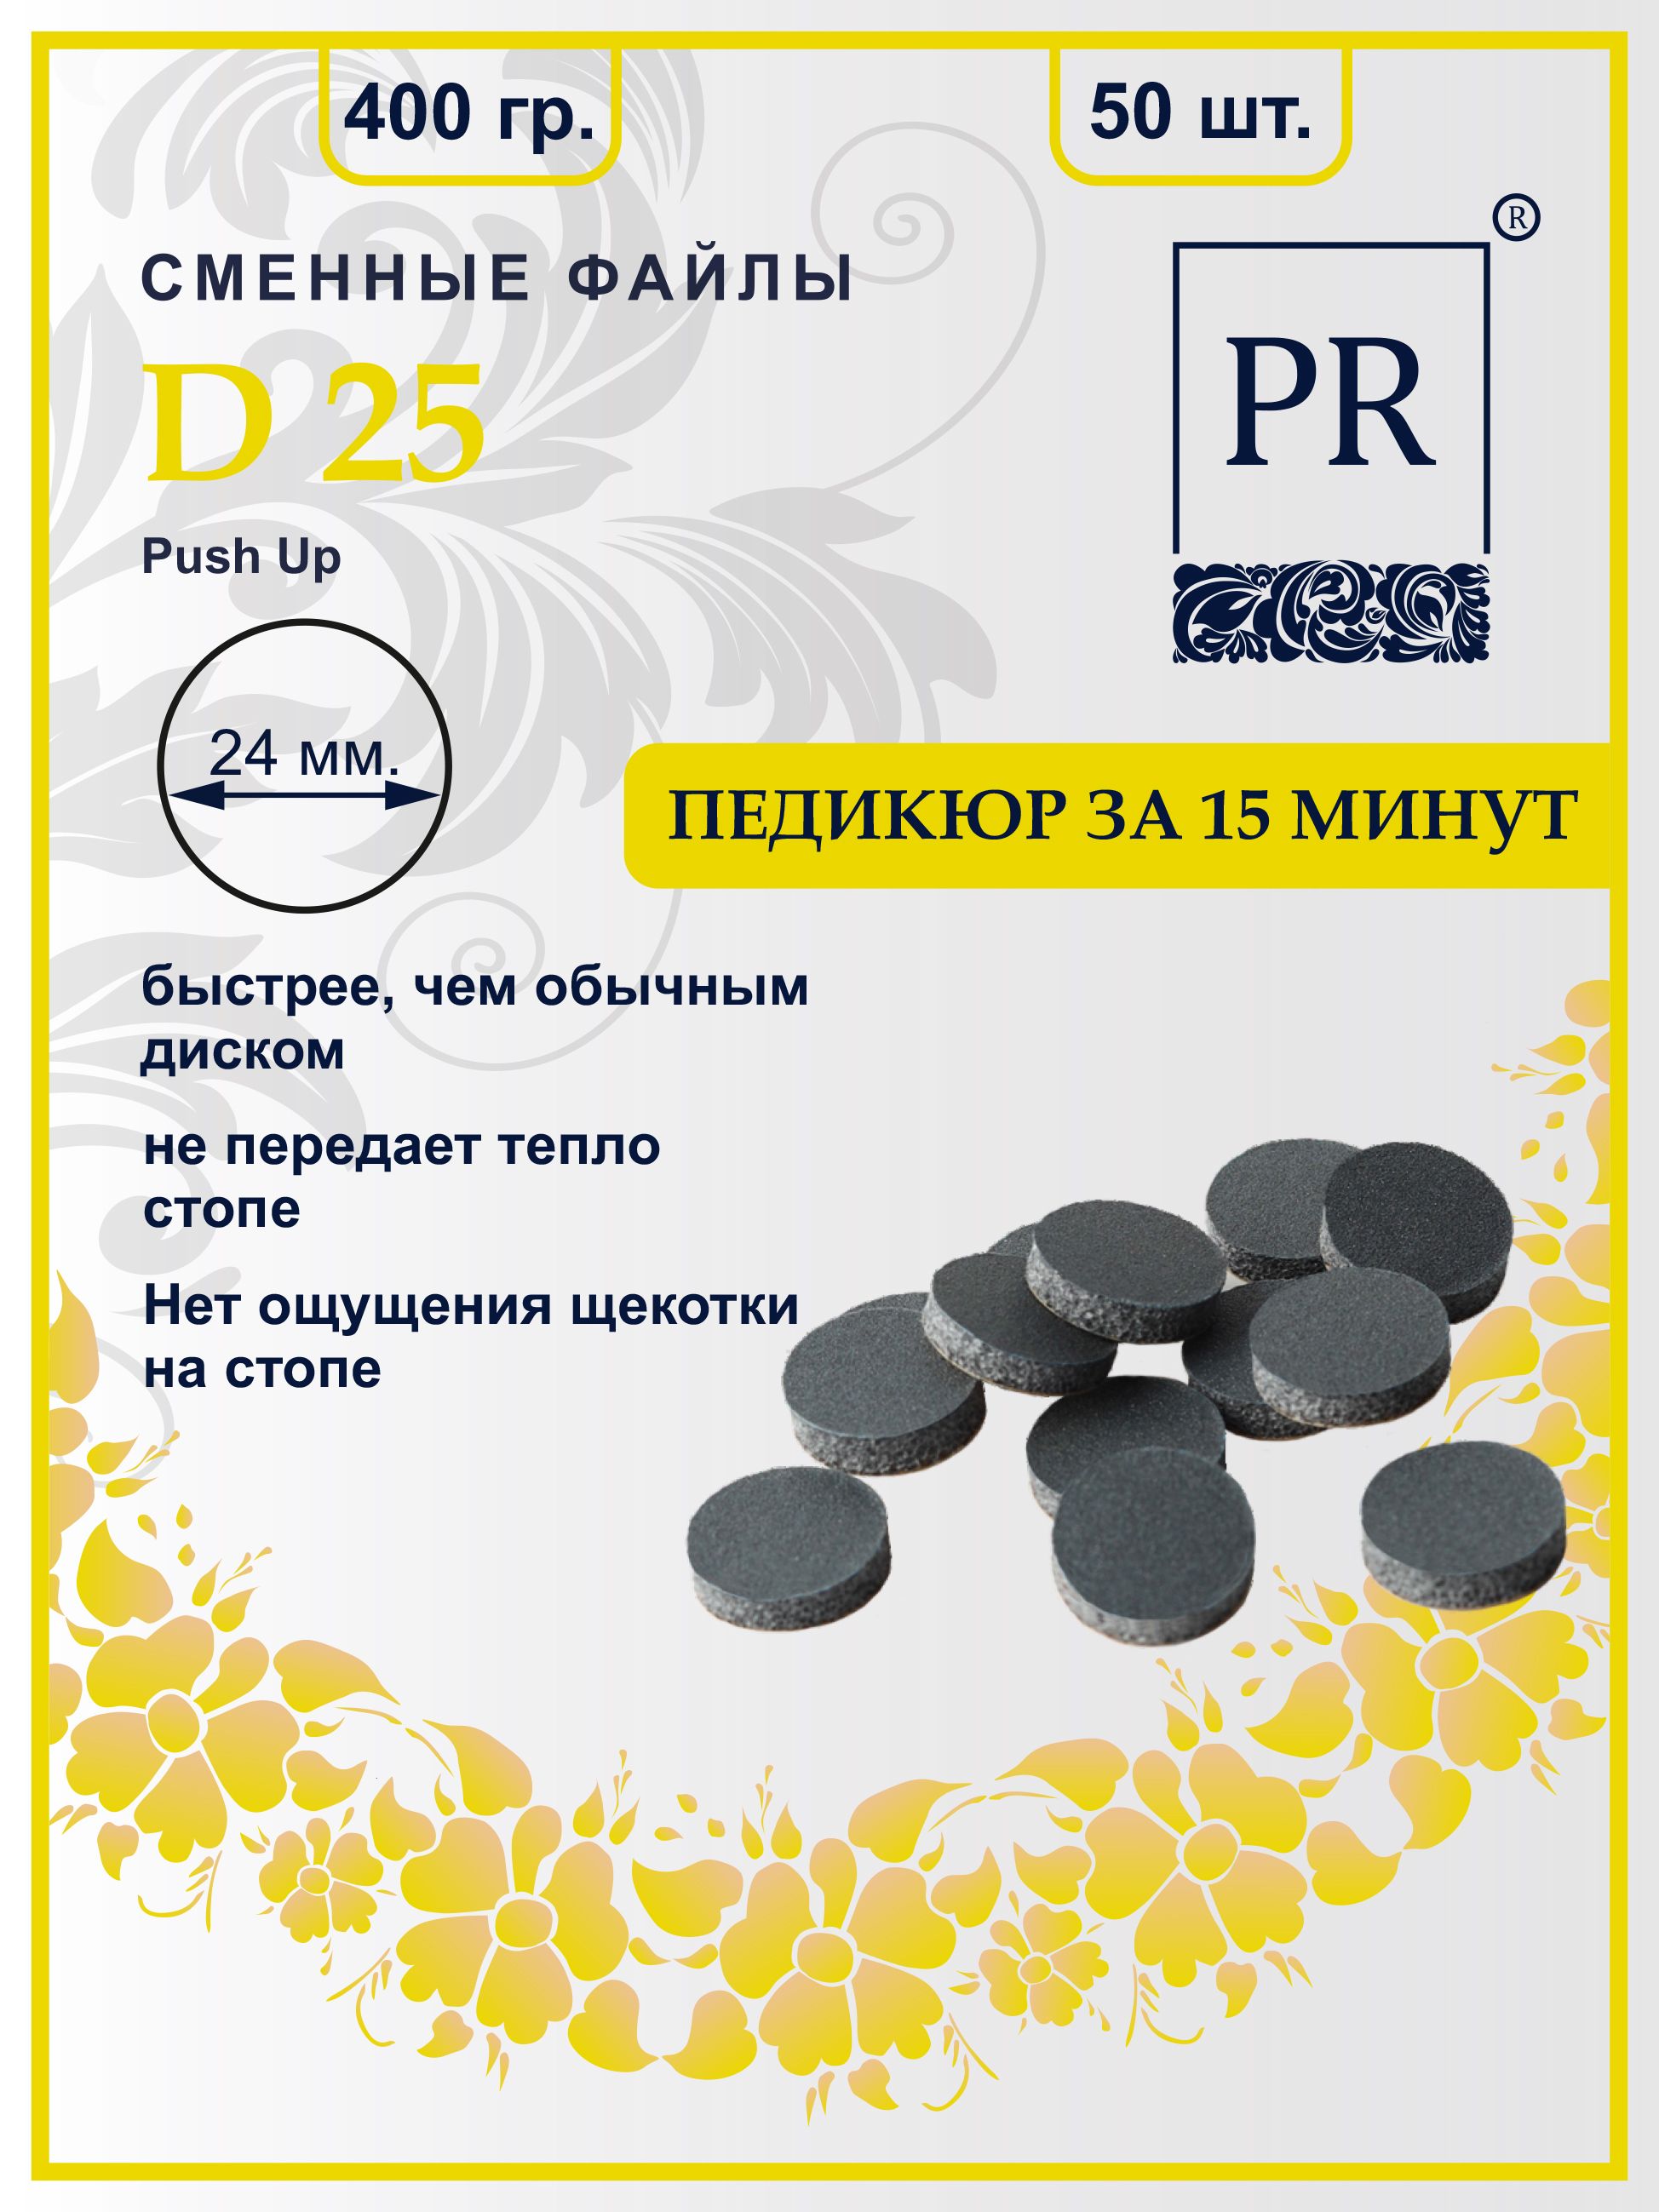 Сменные файлы Pilochki Russia диски Push Up для педикюра для диска L 400 грит 50 штук